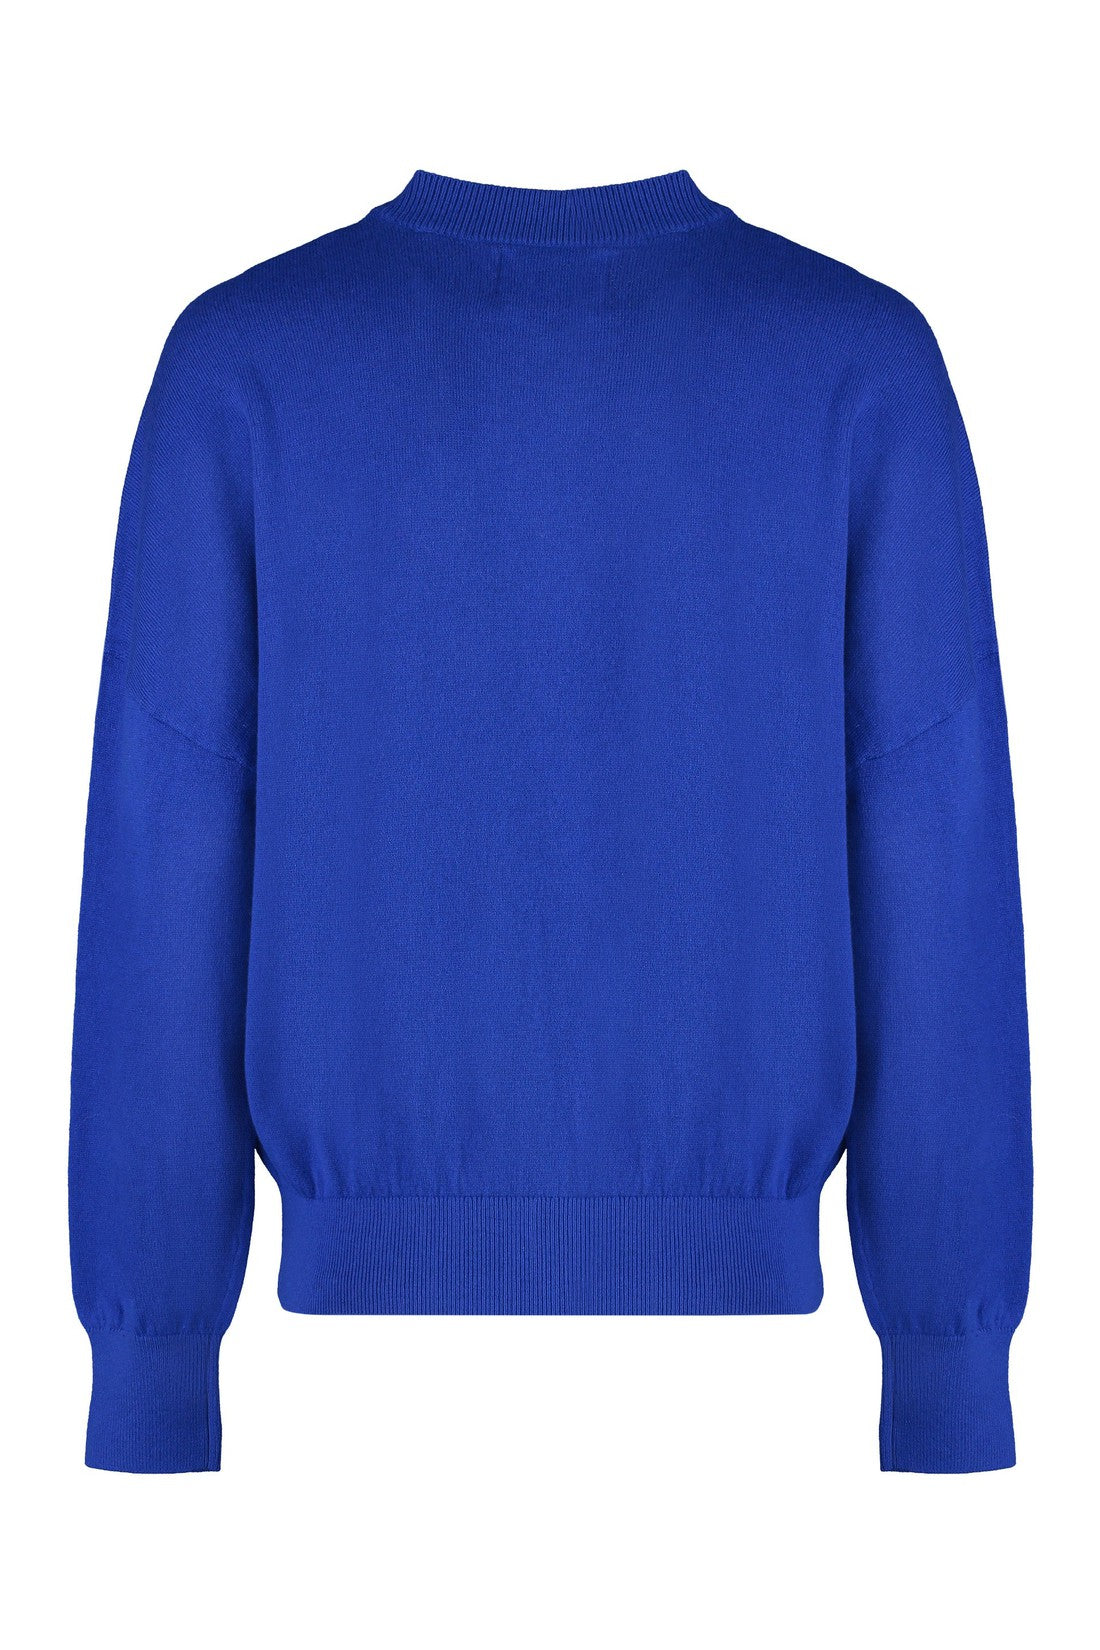 Marant étoile-OUTLET-SALE-Marisans Cotton blend crew-neck sweater-ARCHIVIST